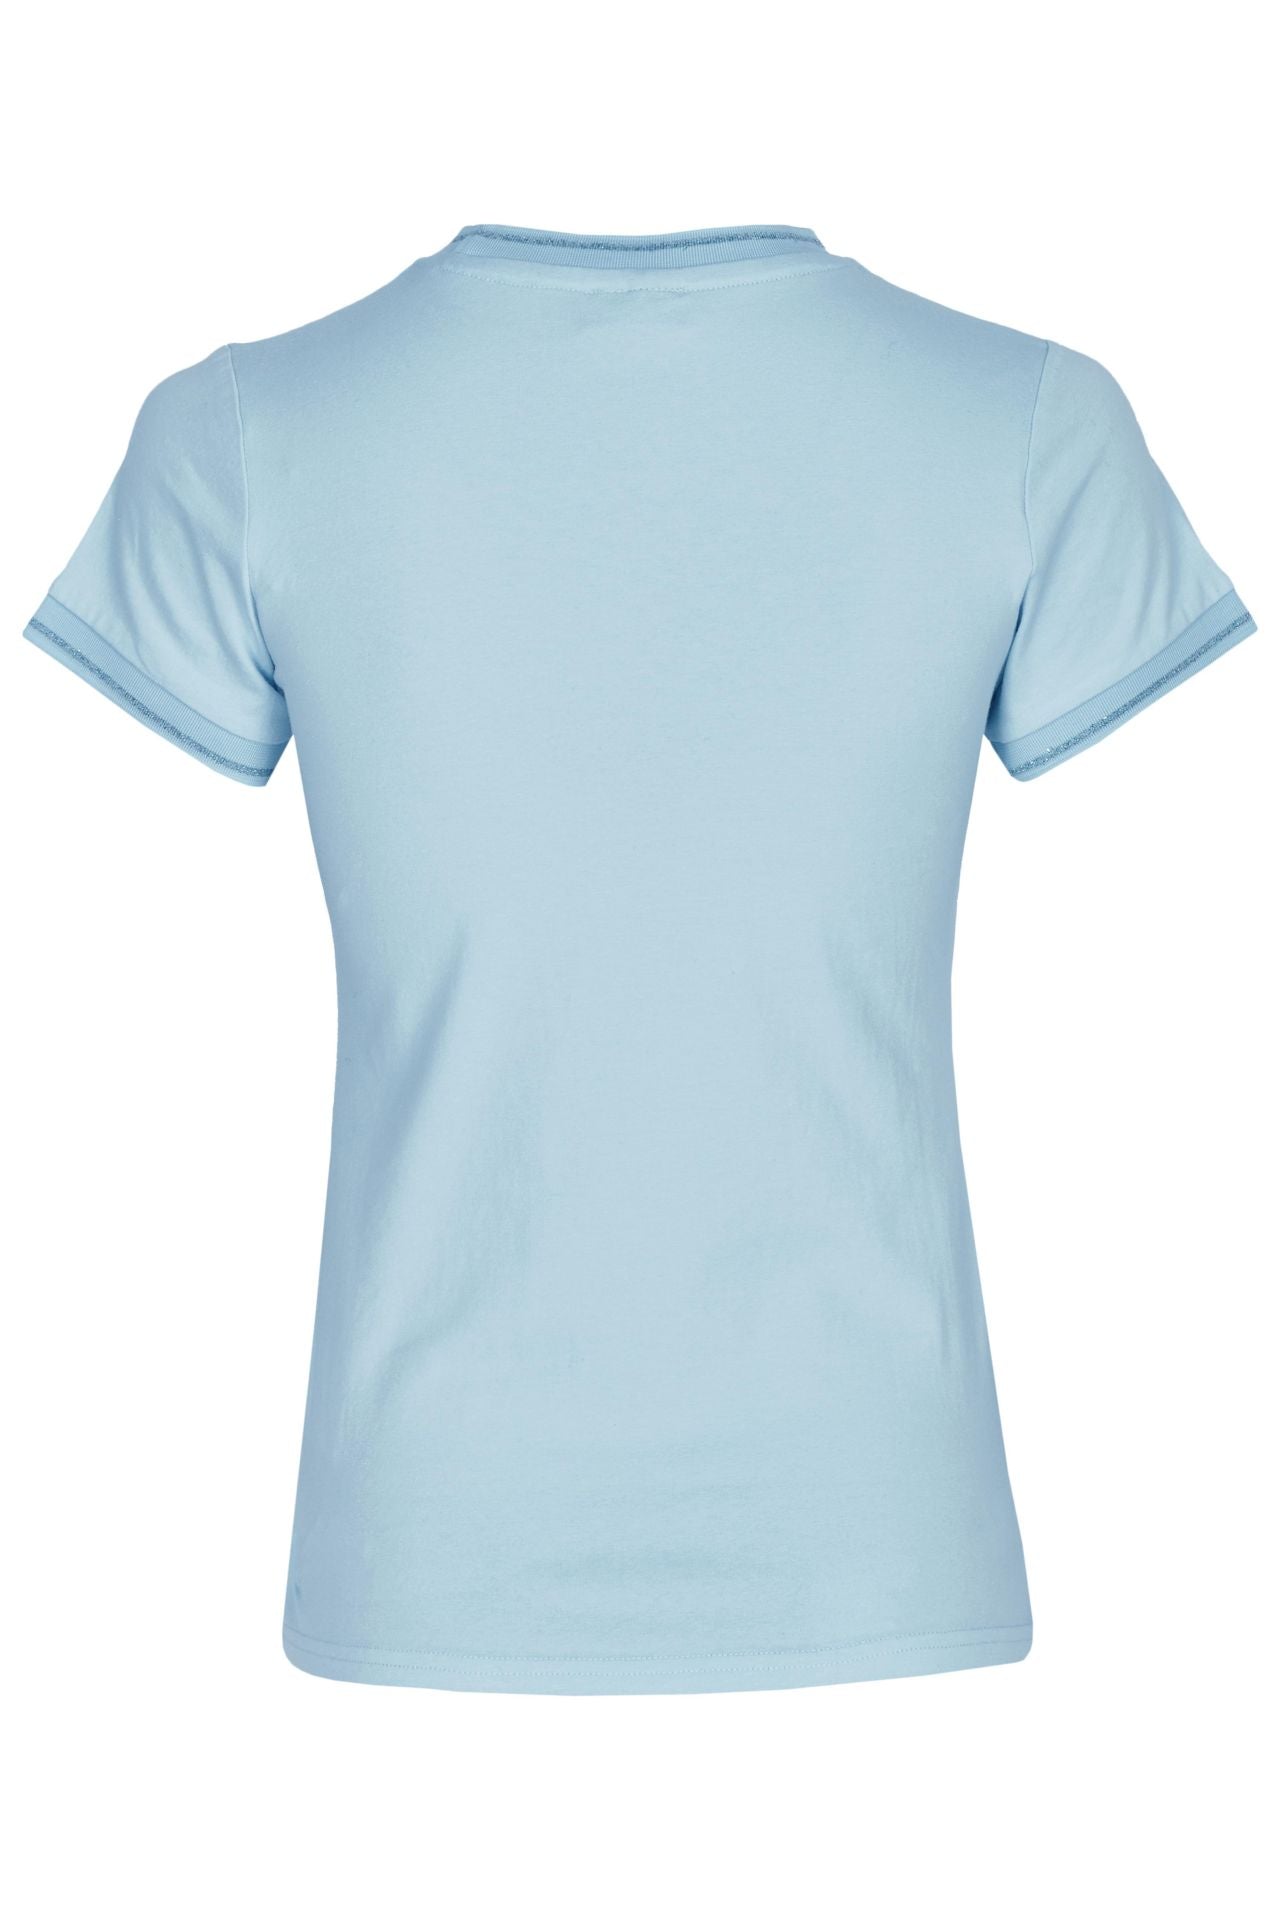 Eskadron Ladies Reflexx T-Shirt